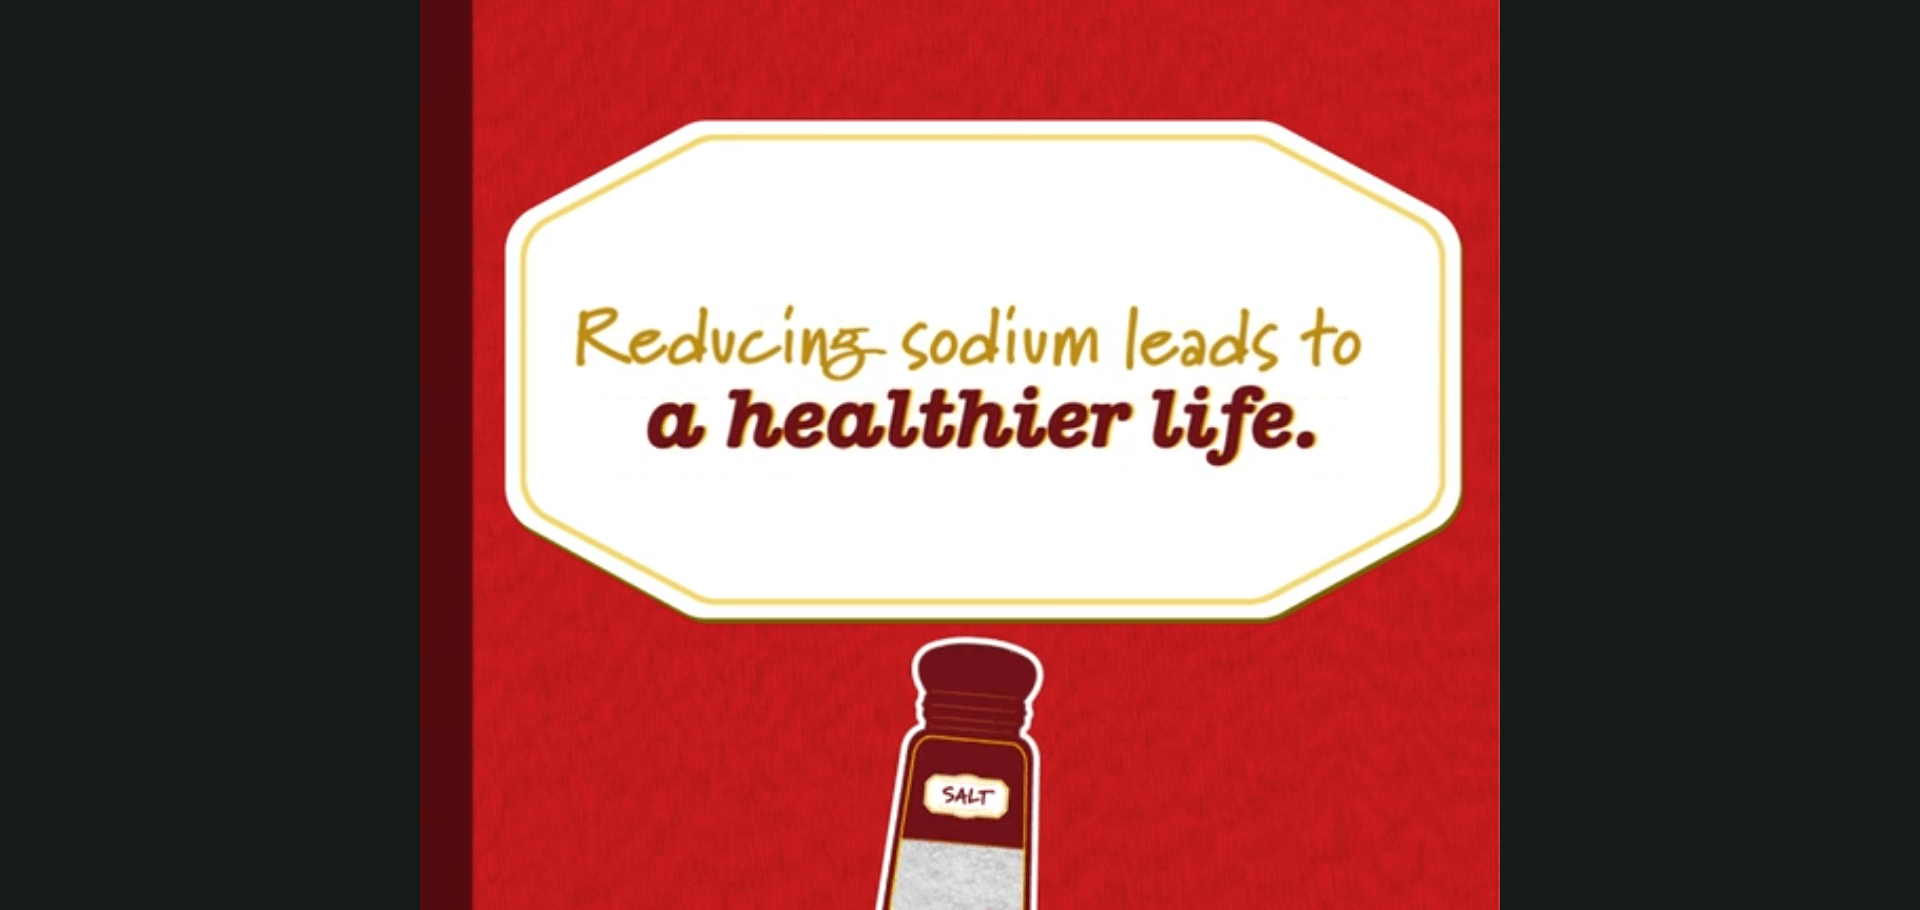 Reducir el sodio conduce a una vida más saludable.